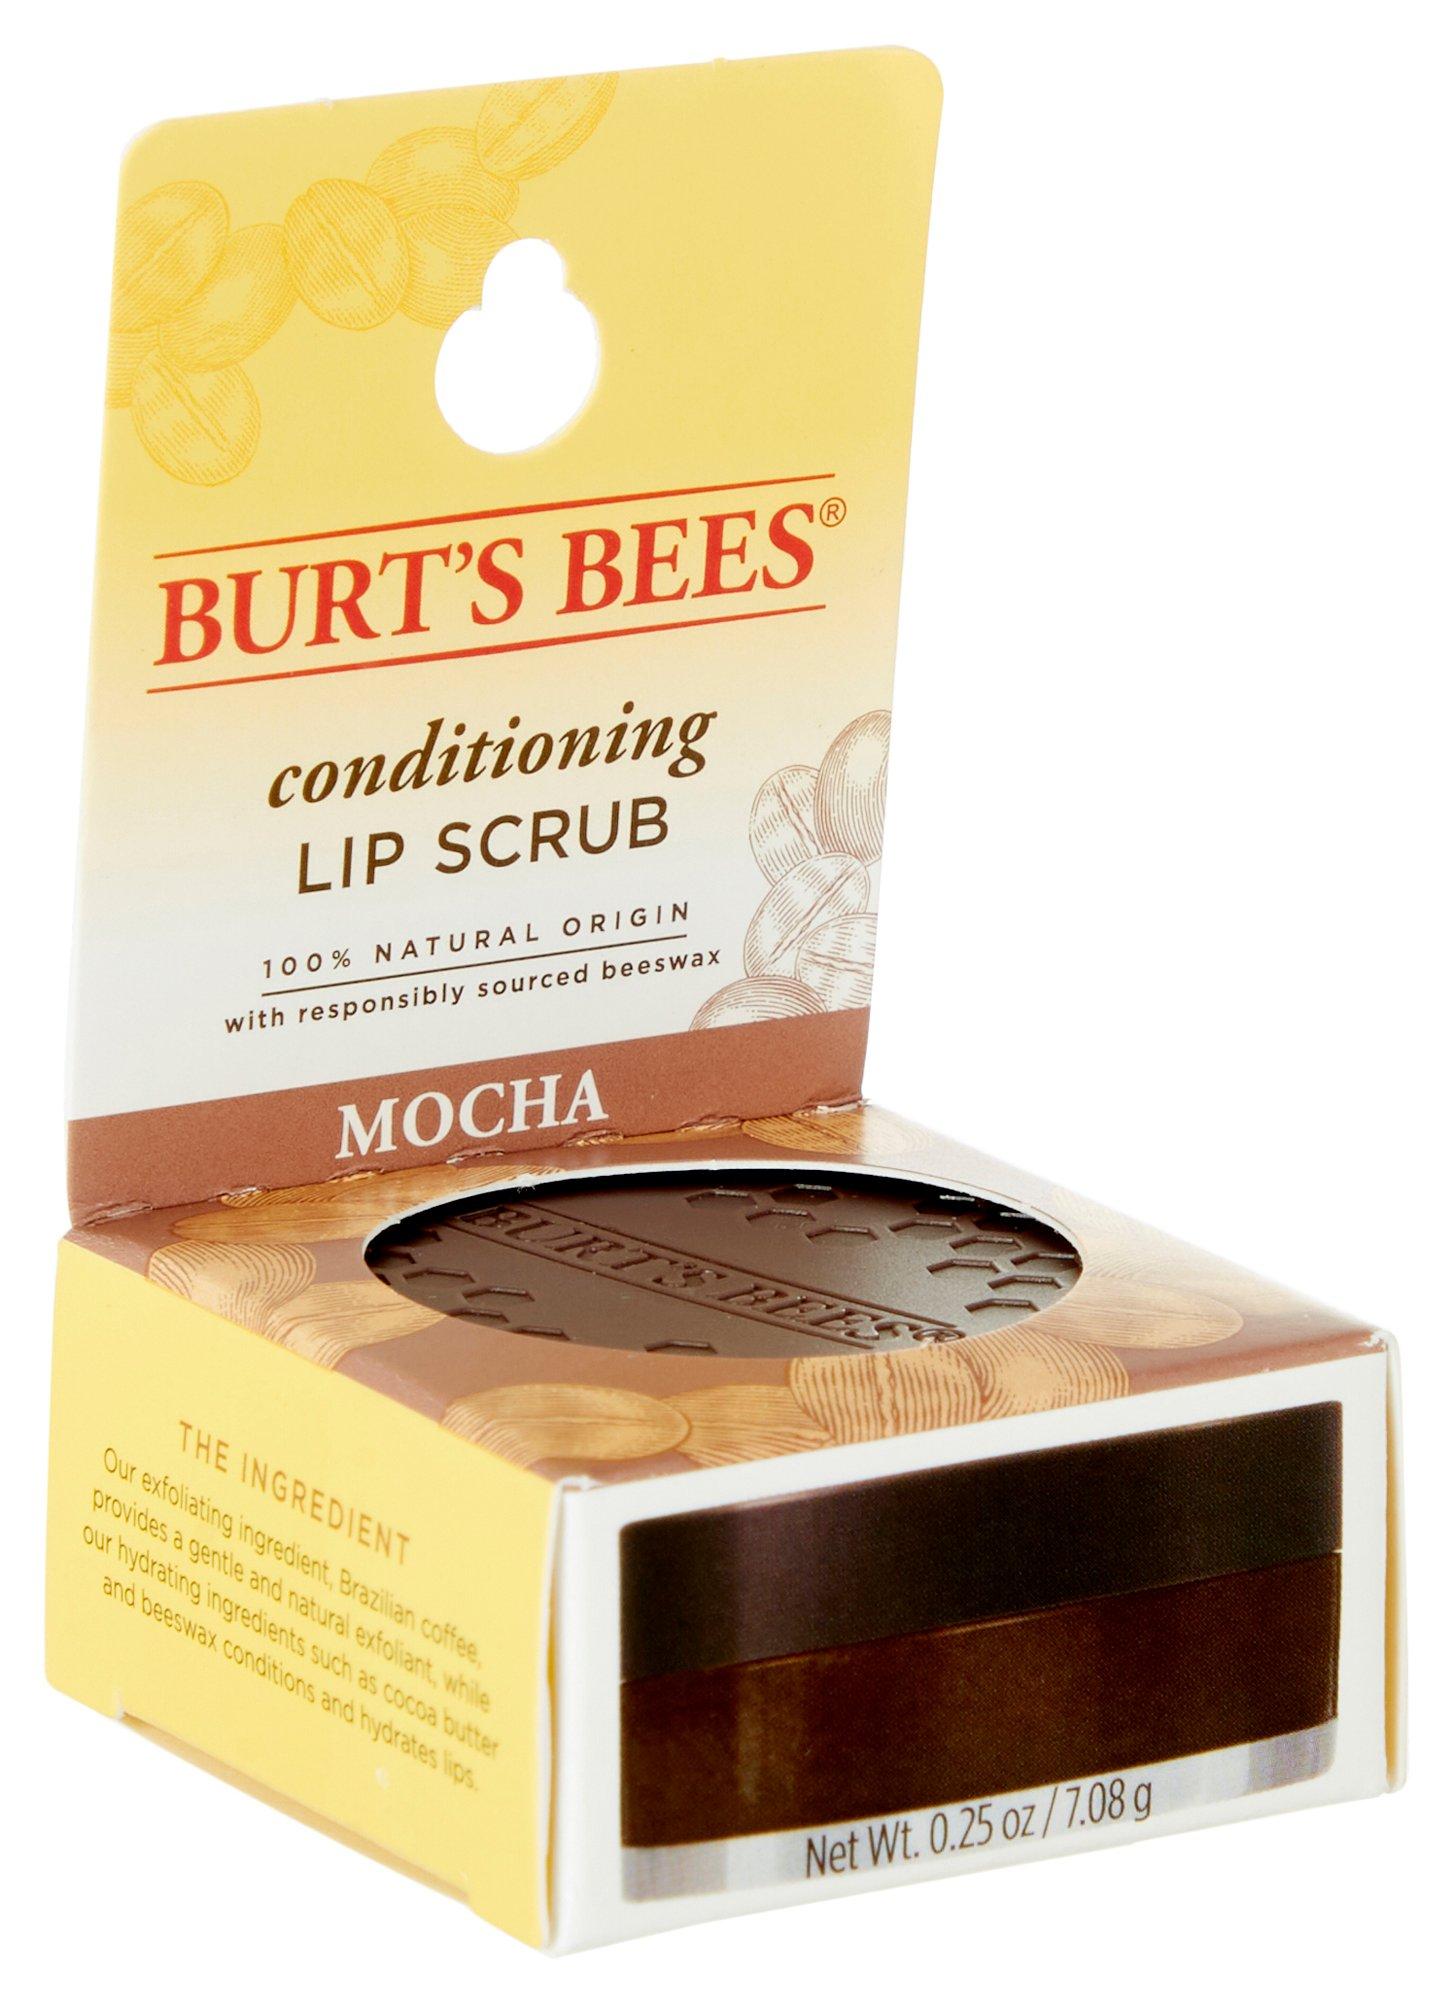 Burts Bees Mocha Conditioning Lip Scrub